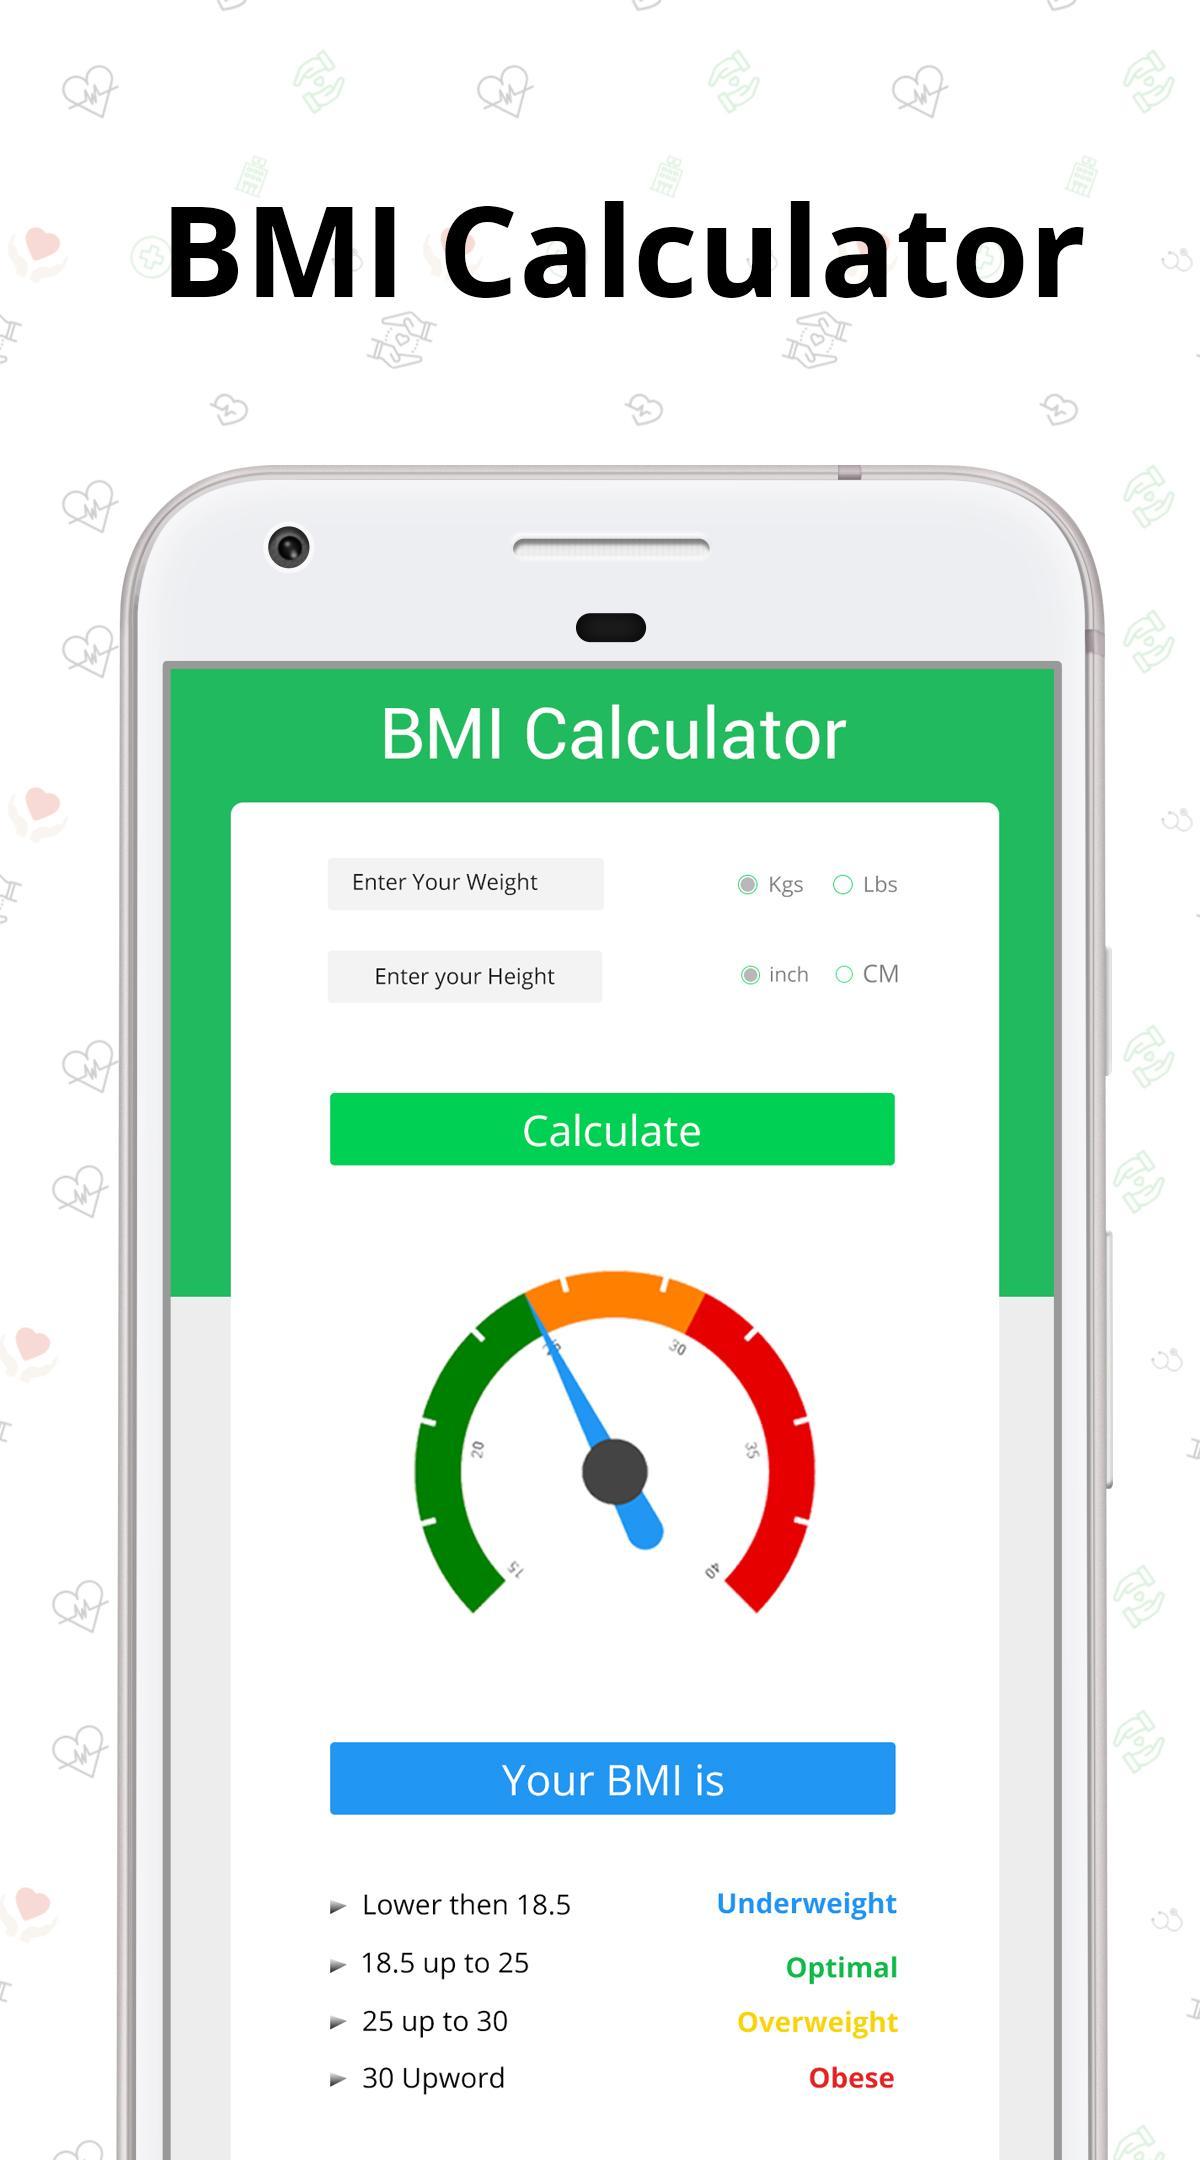 Bmi Calculator App Android Studio - Aljism Blog